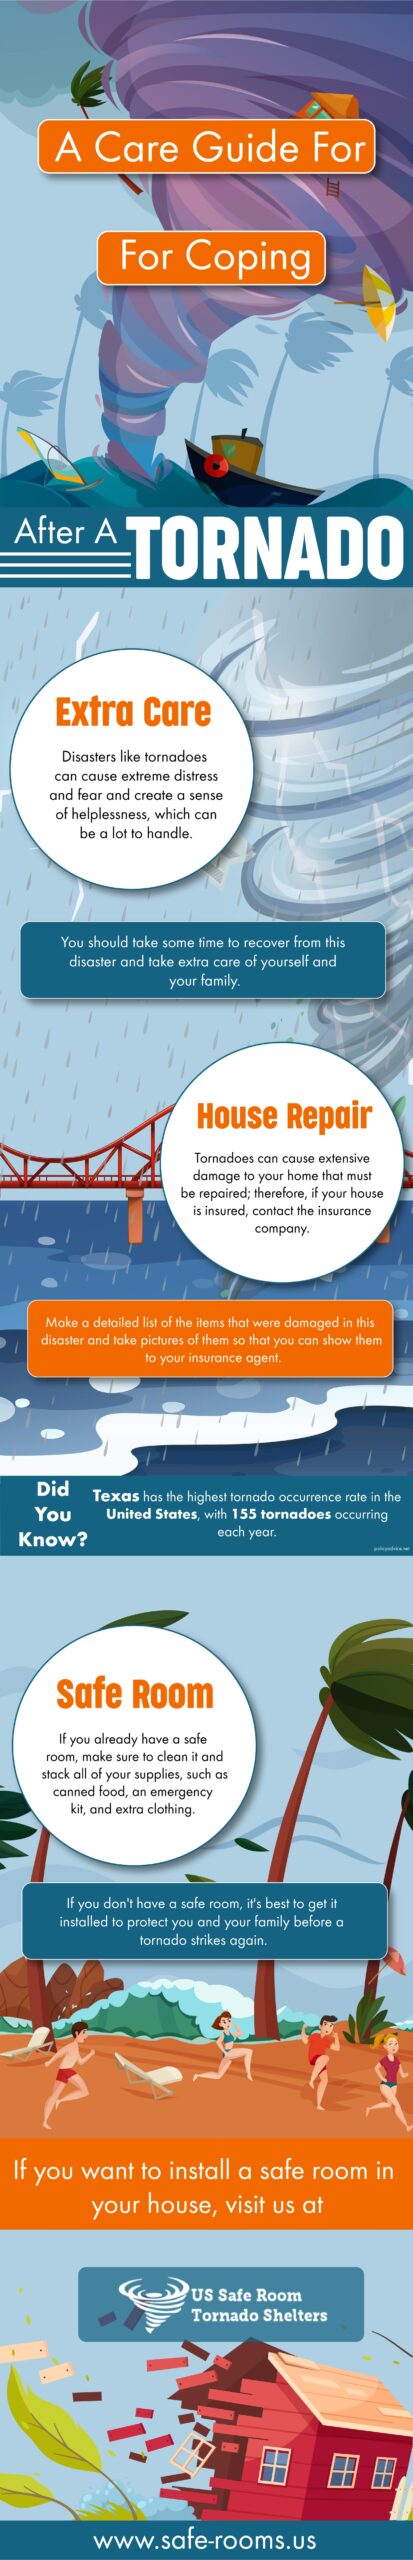 tornado care guide